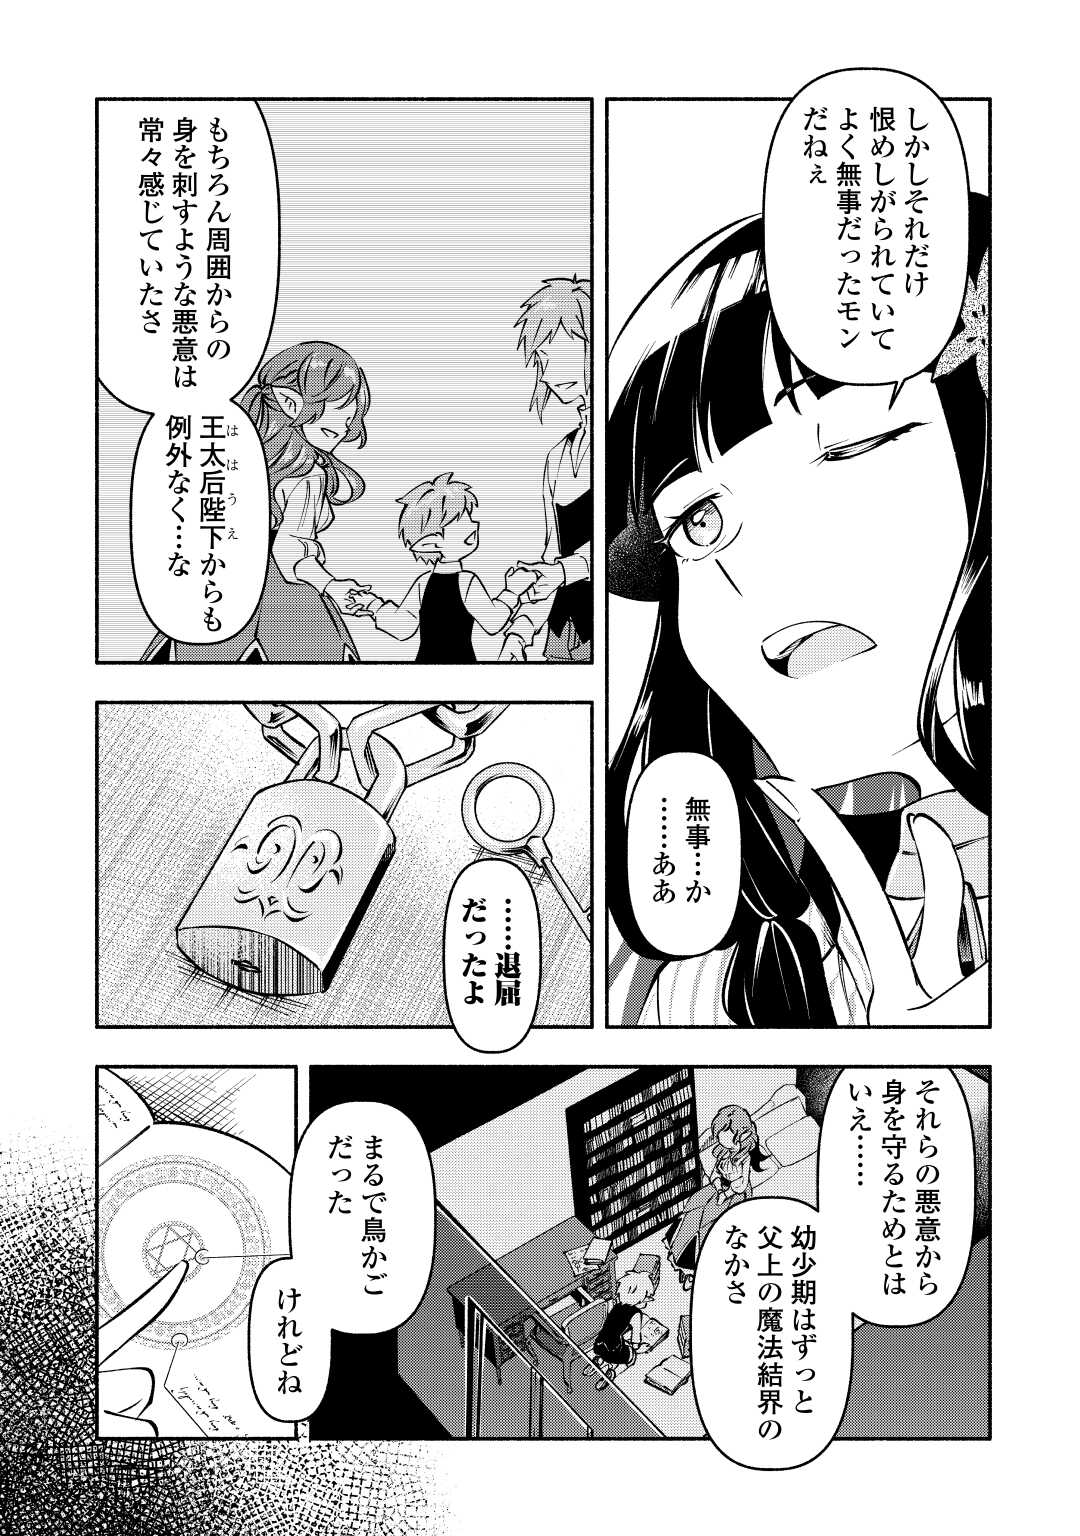 Osanago wa Saikyou no Tamer da to Kizuiteimasen! - Chapter 11 - Page 7